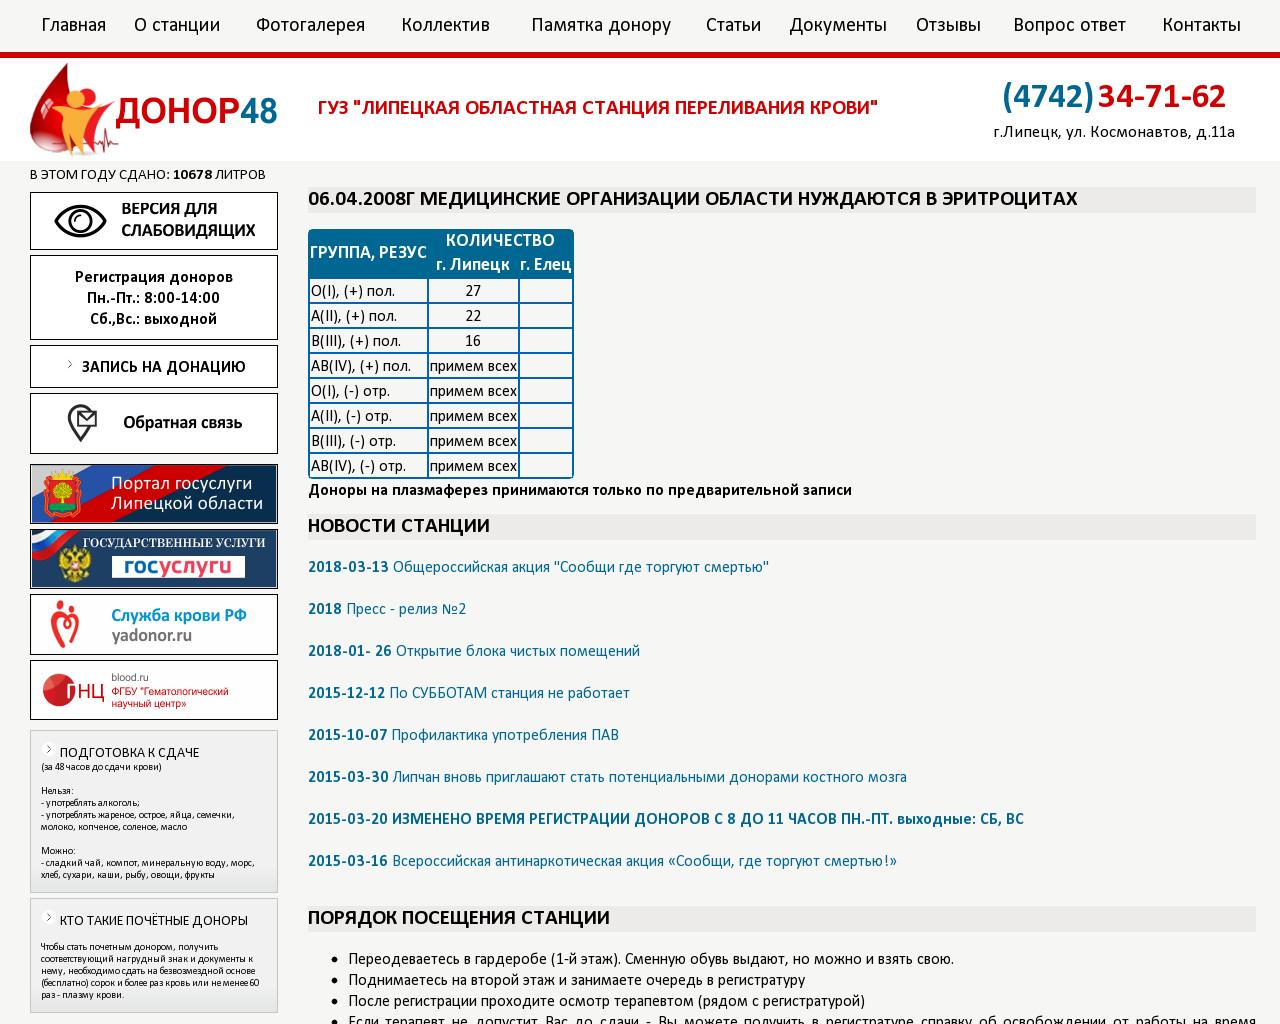 Изображение сайта donor48.ru в разрешении 1280x1024